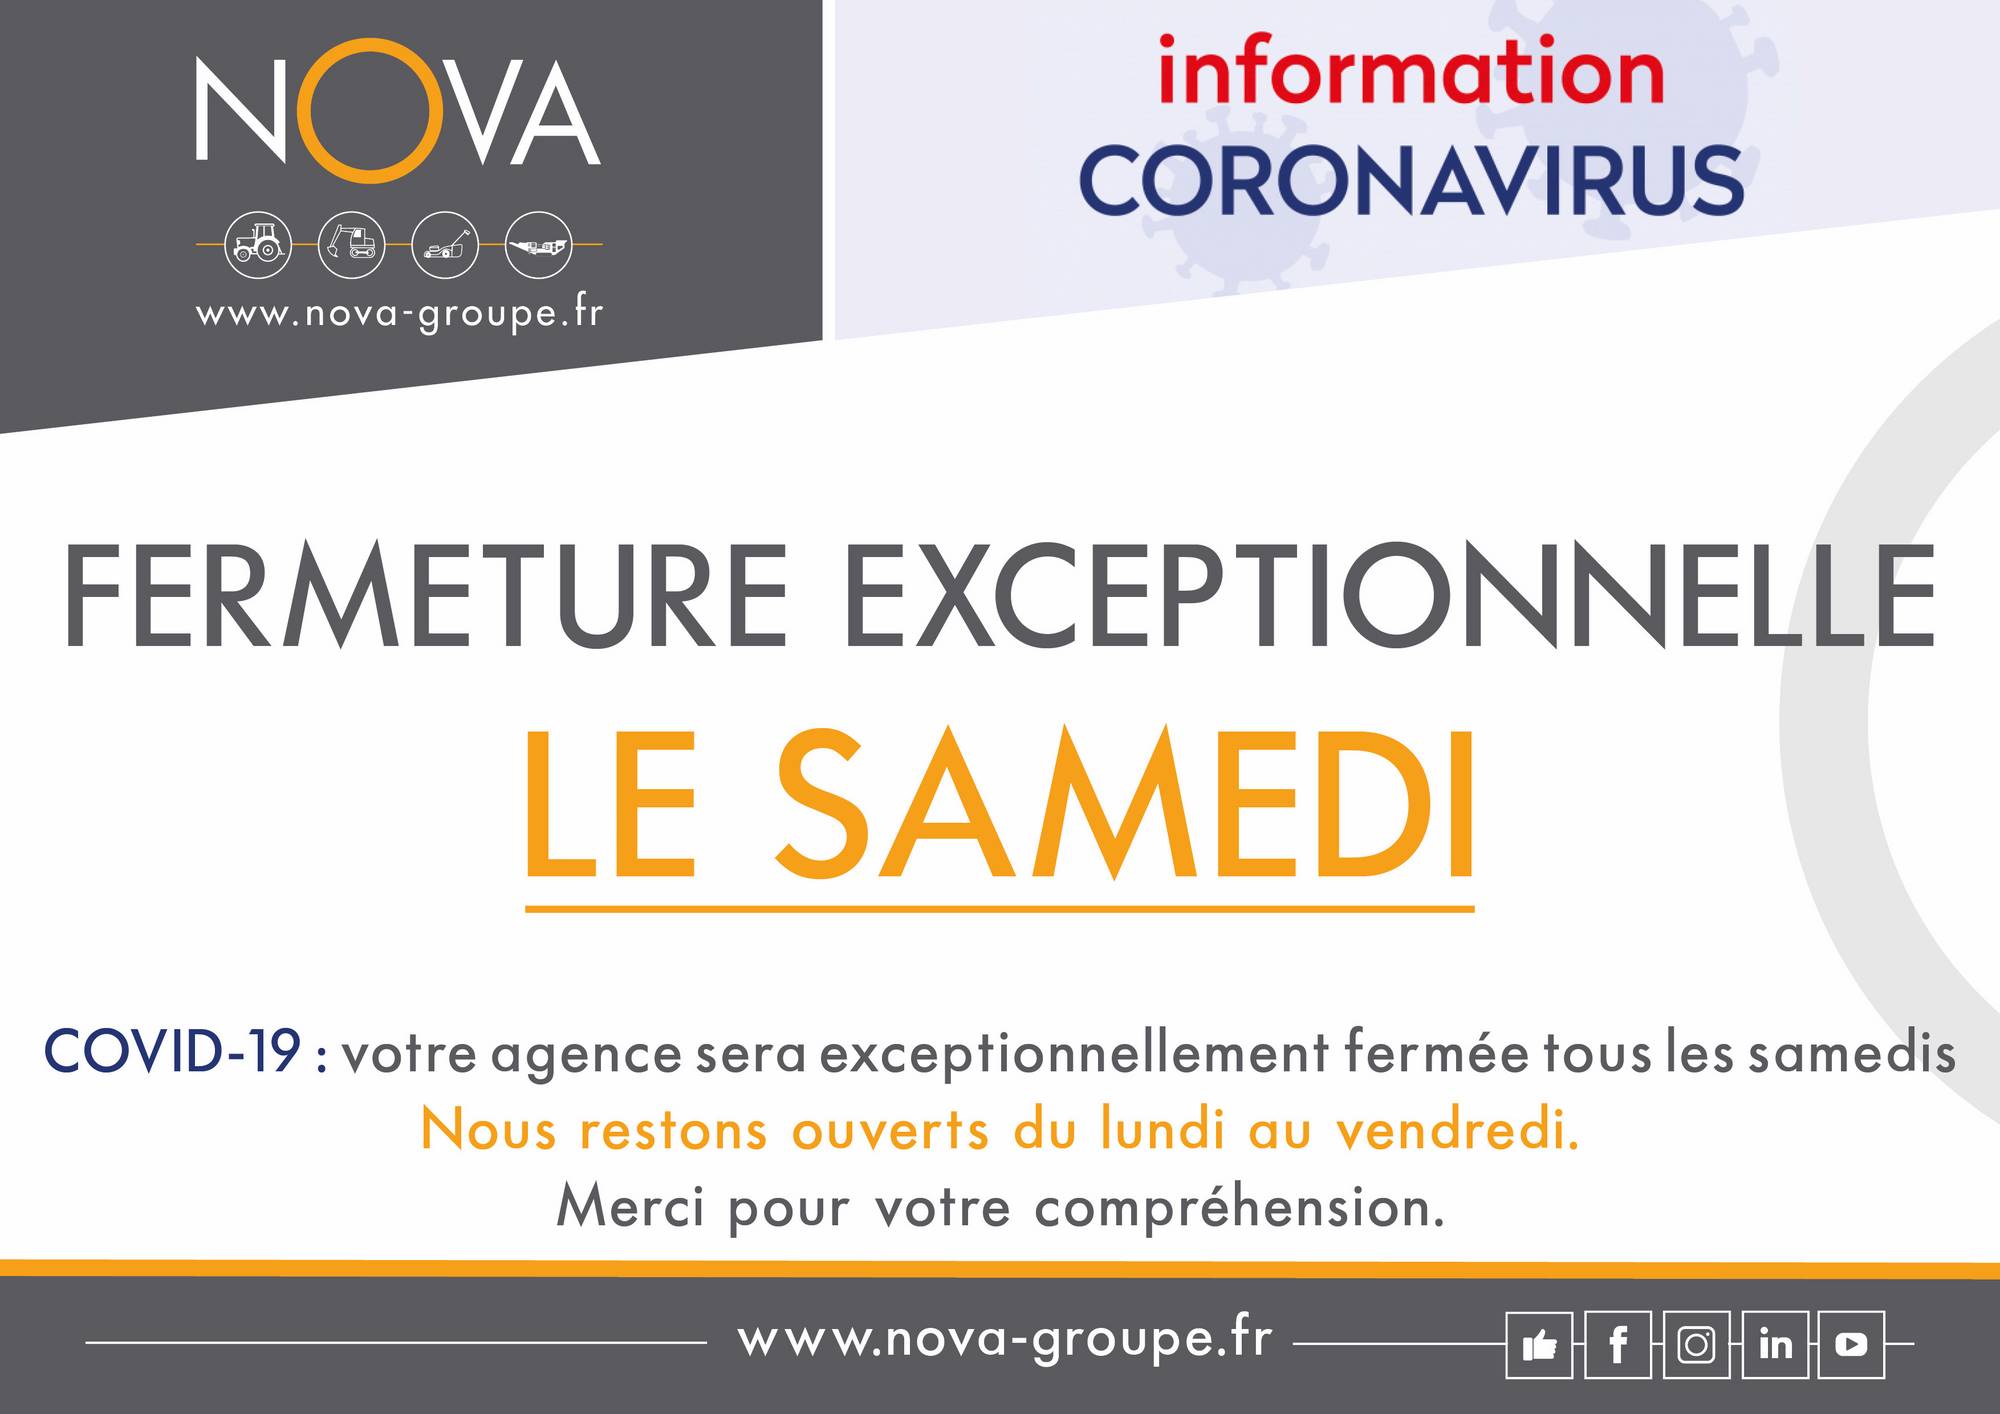 INFORMATION CLIENT COVID19 / VOS AGENCES NOVA FERMENT EXCEPTIONNELLEMENT LE SAMEDI